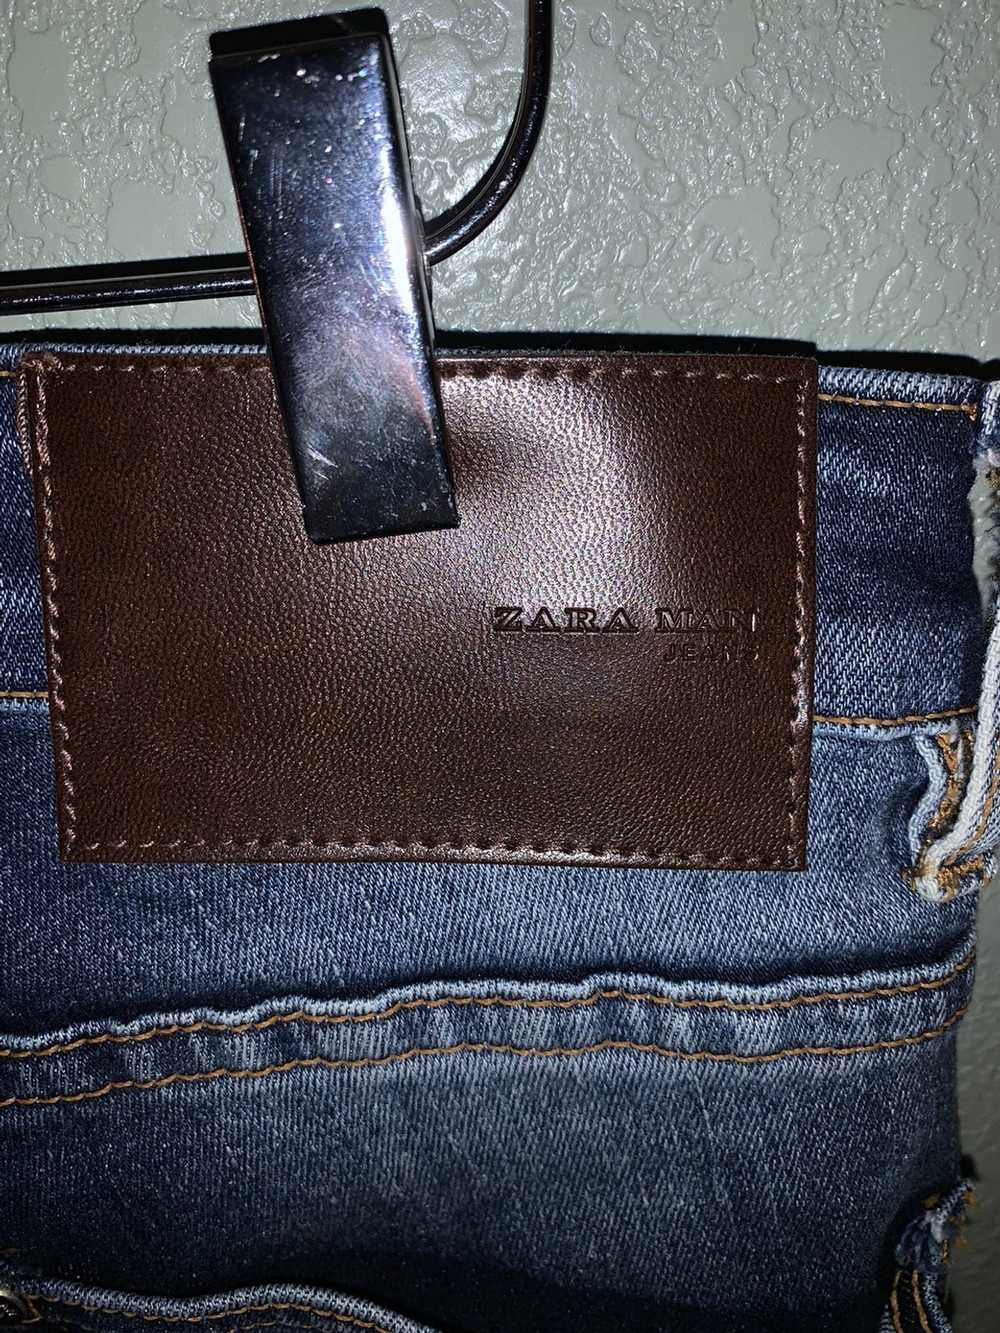 Zara Basic Skinny Jeans - image 5